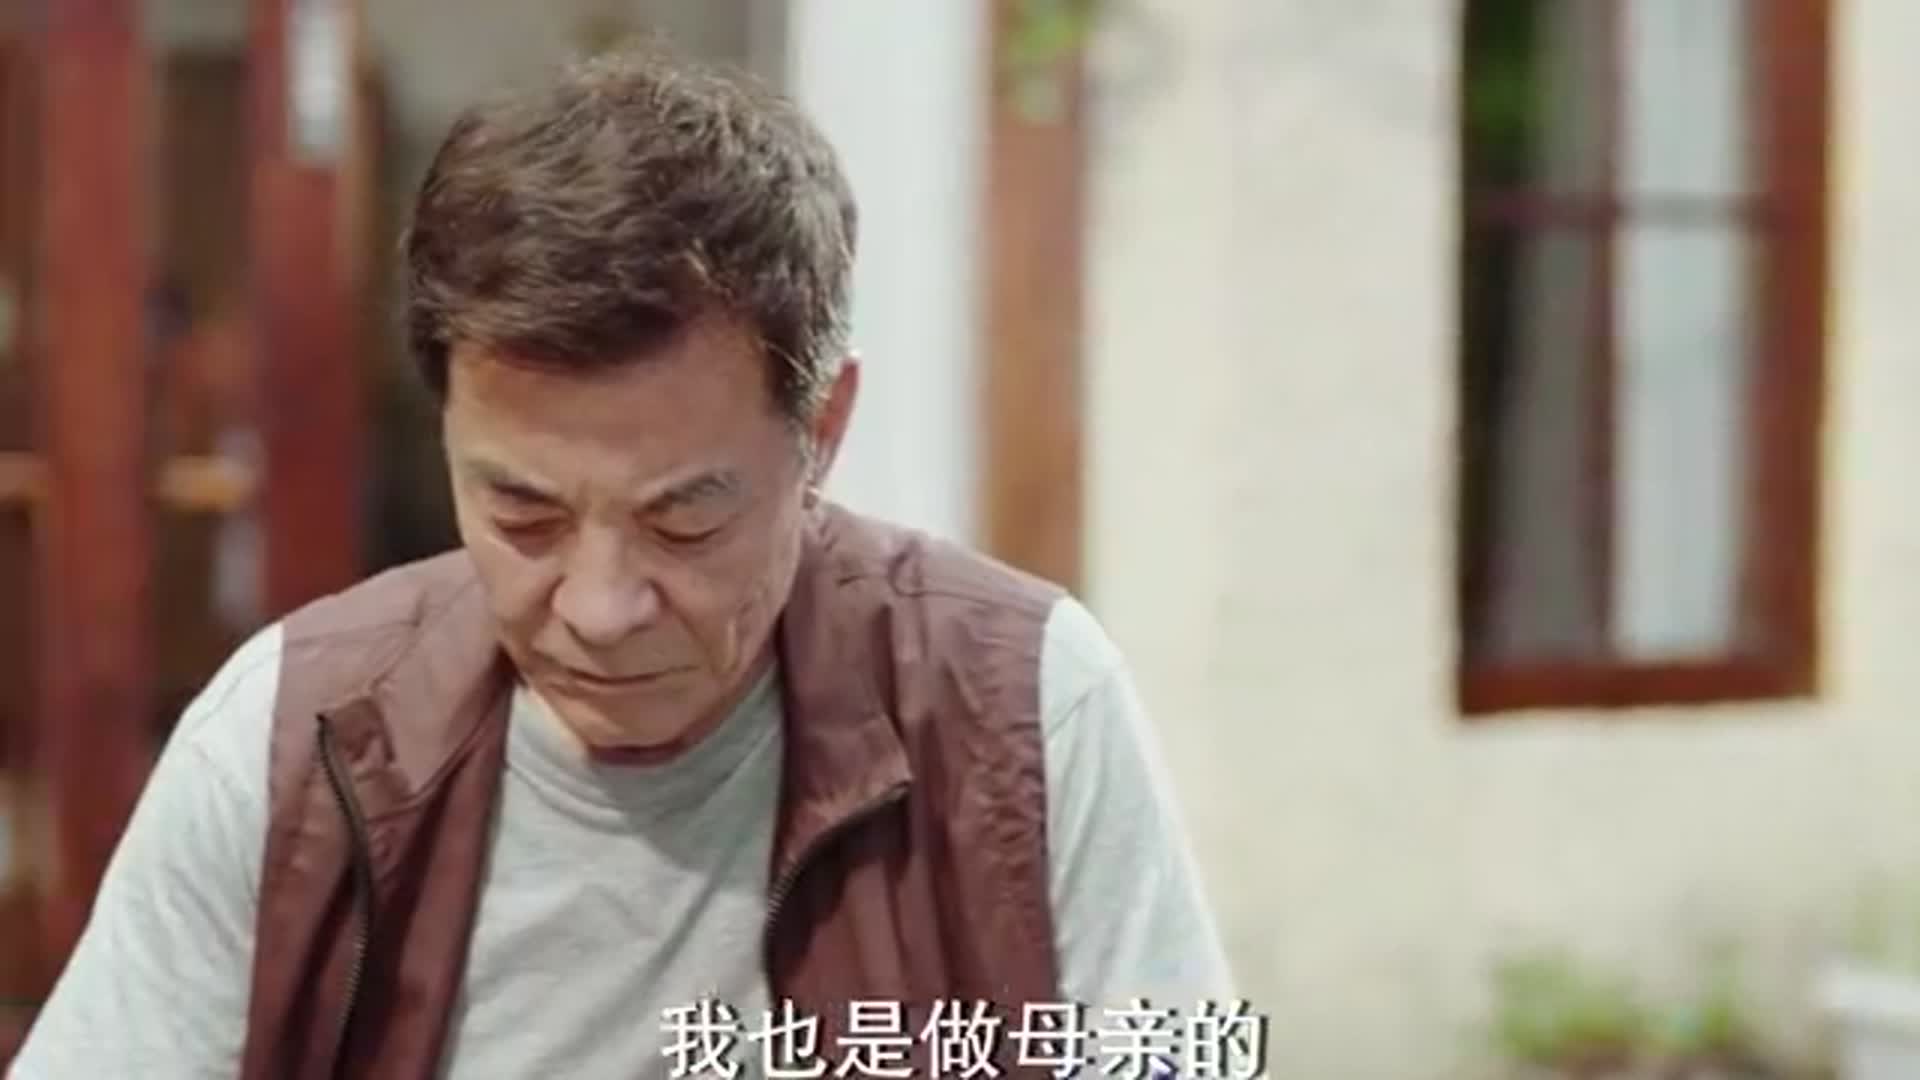 生活万岁:倪叔提到樊丽萍老曾一下急眼了,他愧疚那样对董春香